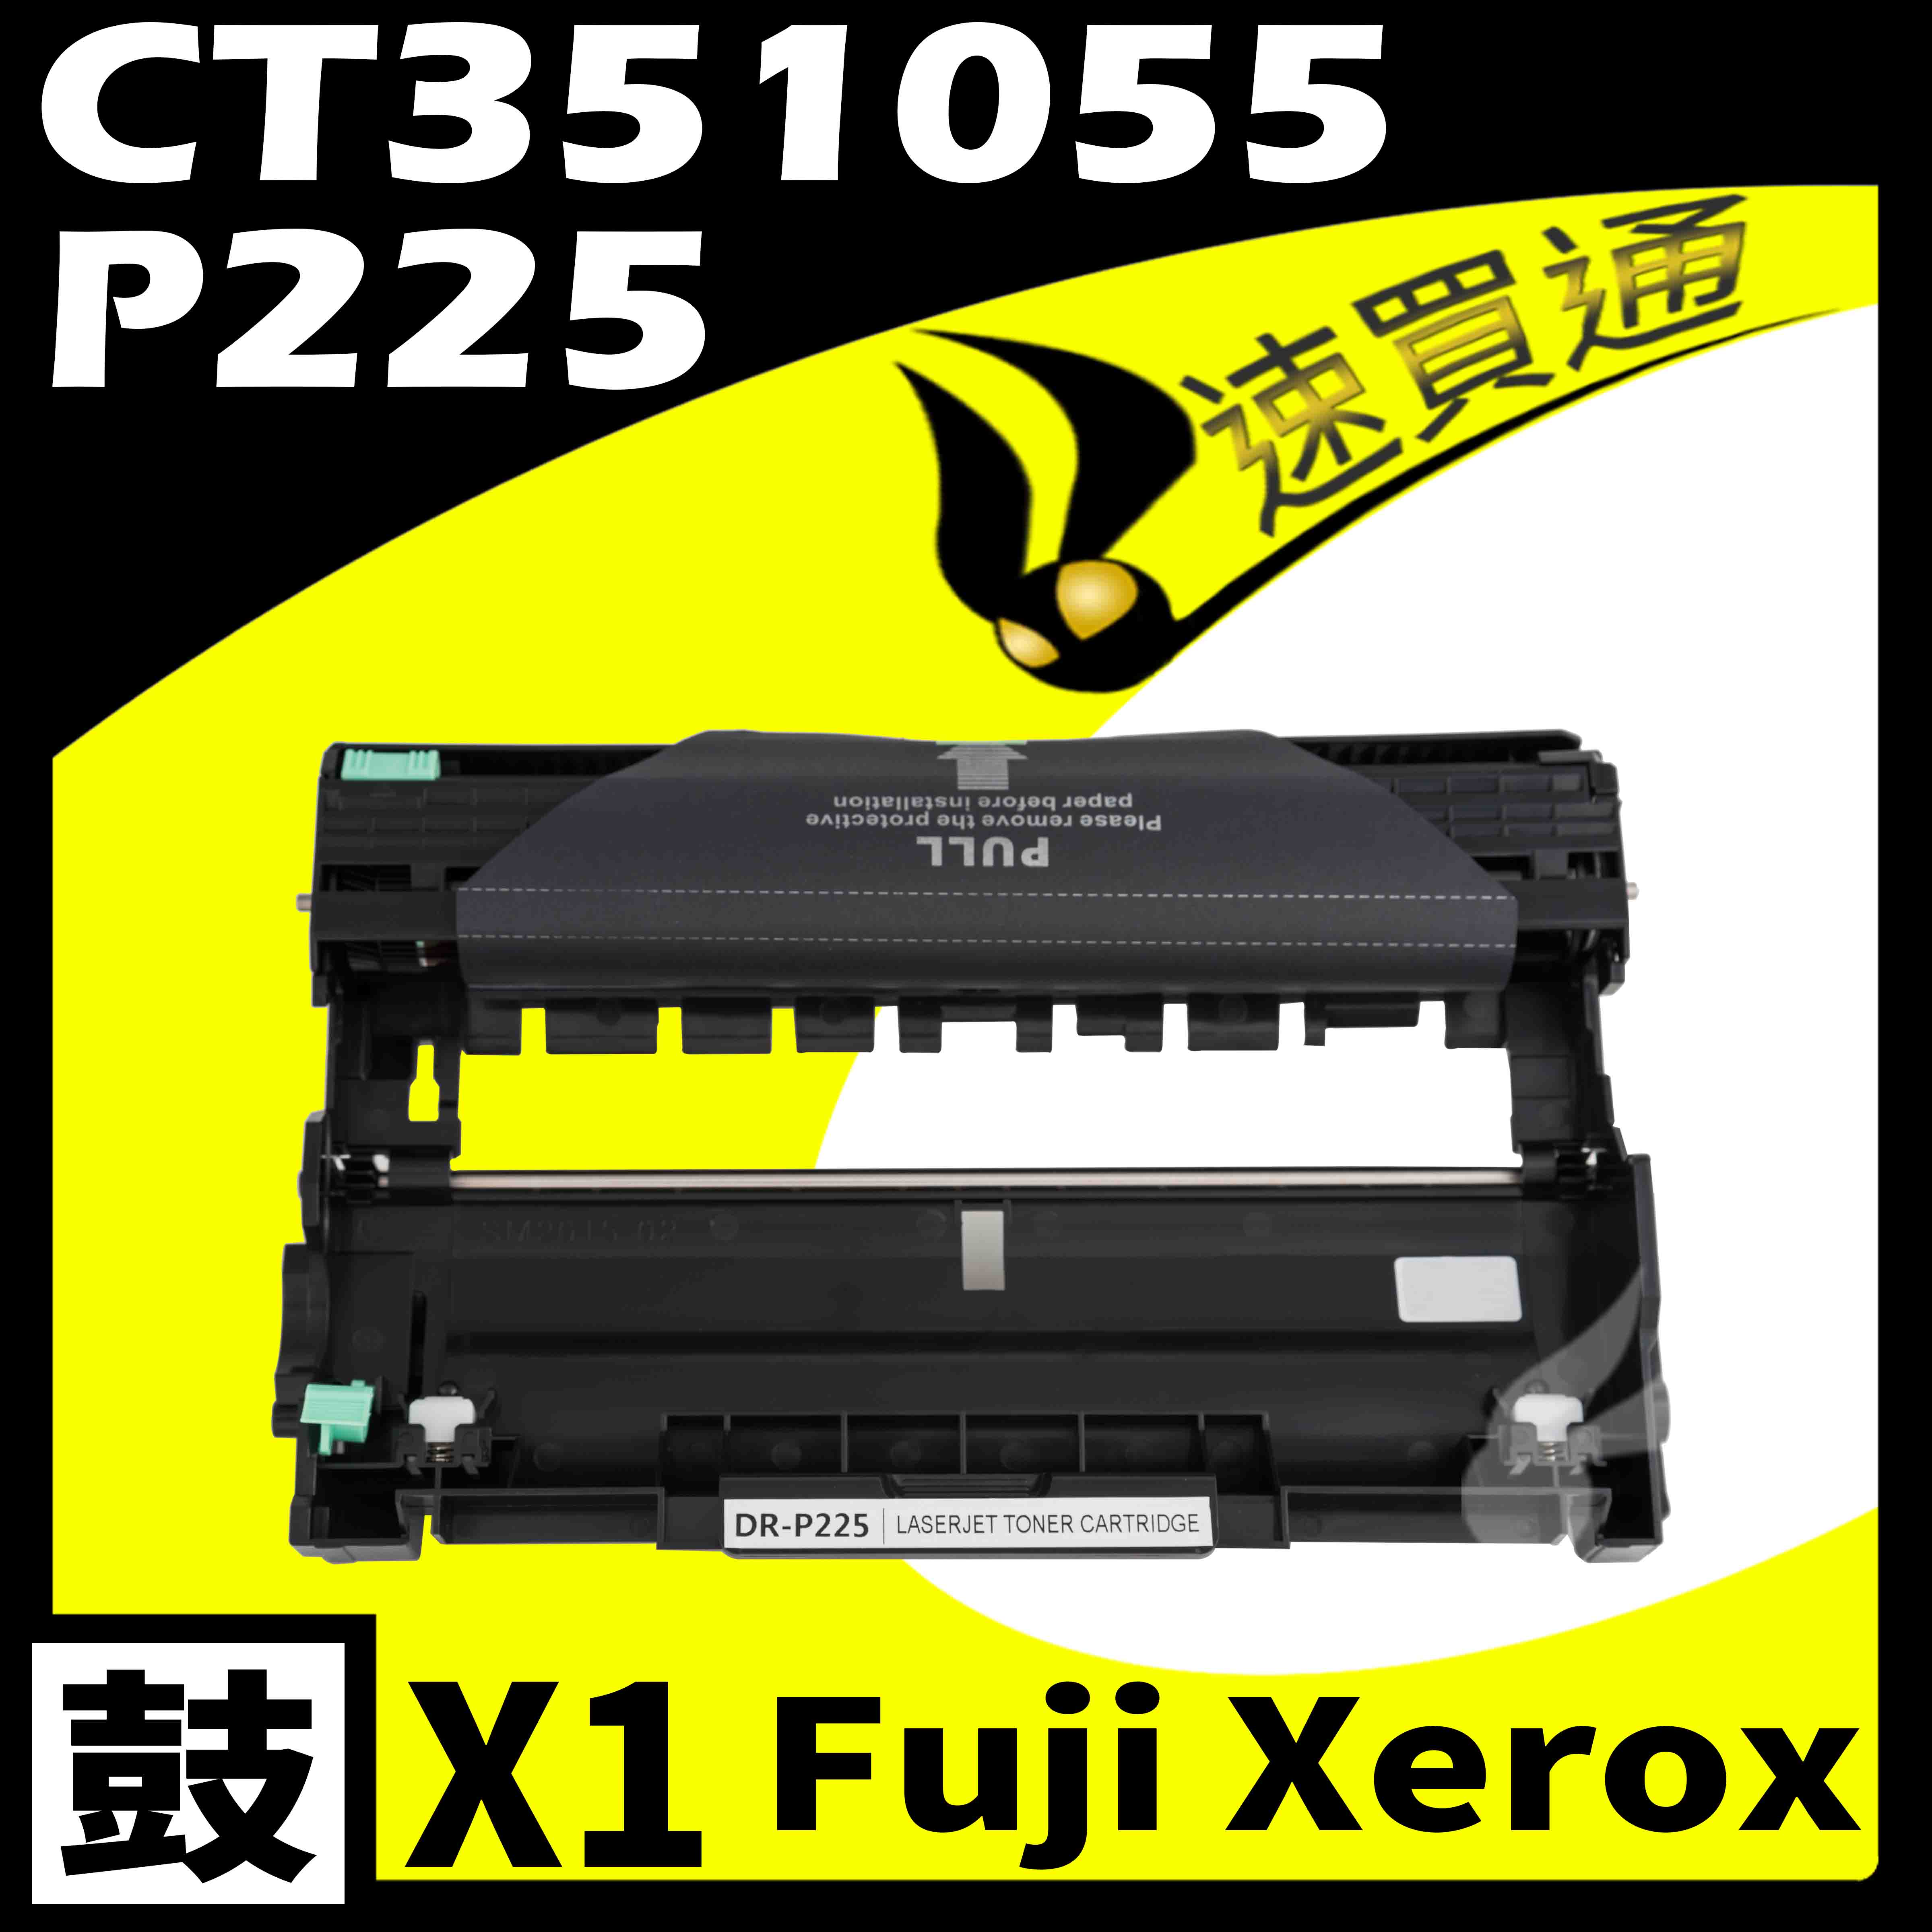 【速買通】Fuji Xerox P225D/CT351055 相容光鼓匣 M225dw/M225z/M265z/P225